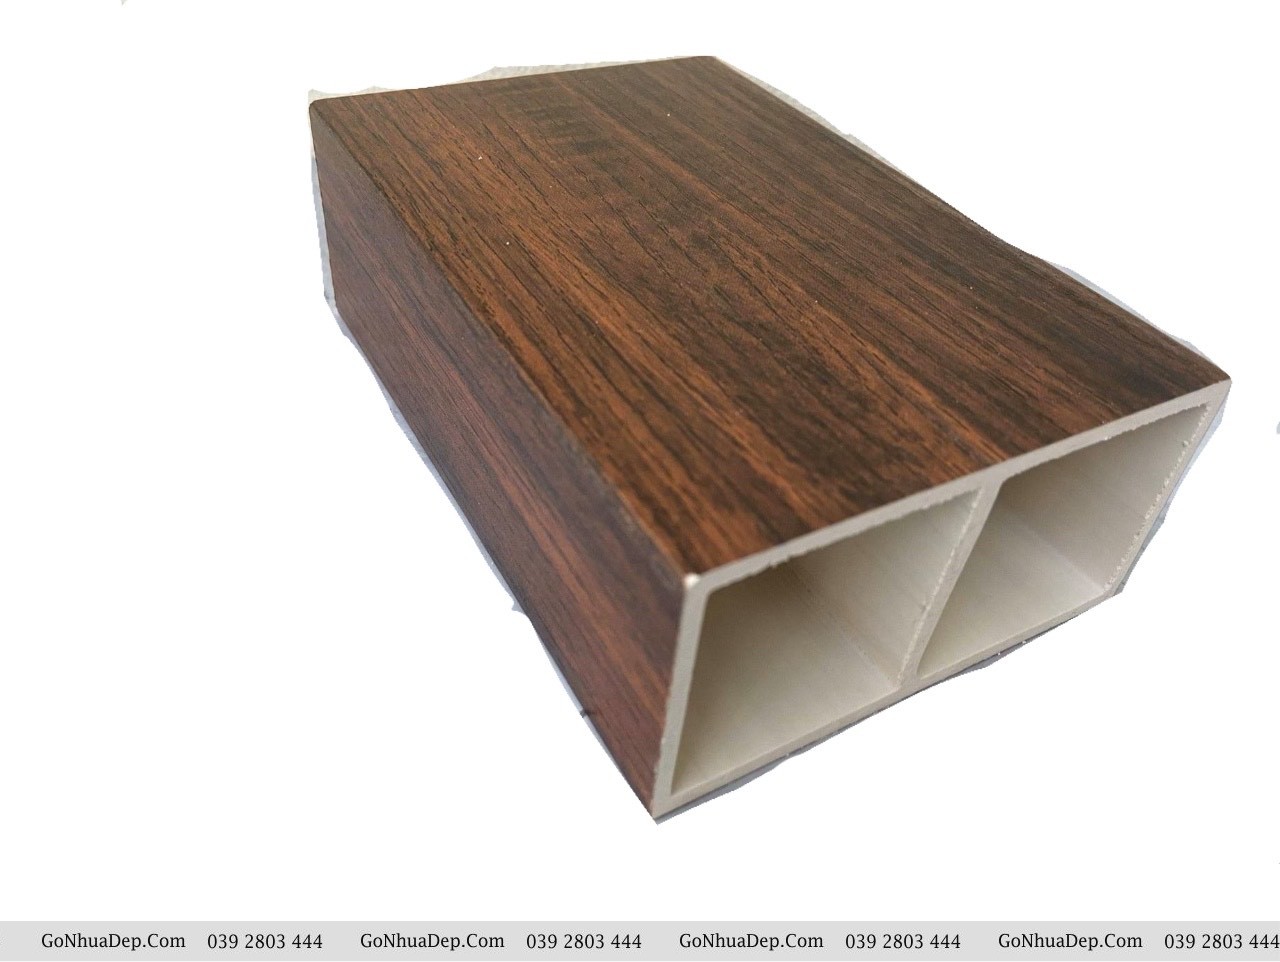 Thanh lam trang trí gỗ nhựa composite, bền màu, không cong vênh, mối mọt tại Đà Nẵng